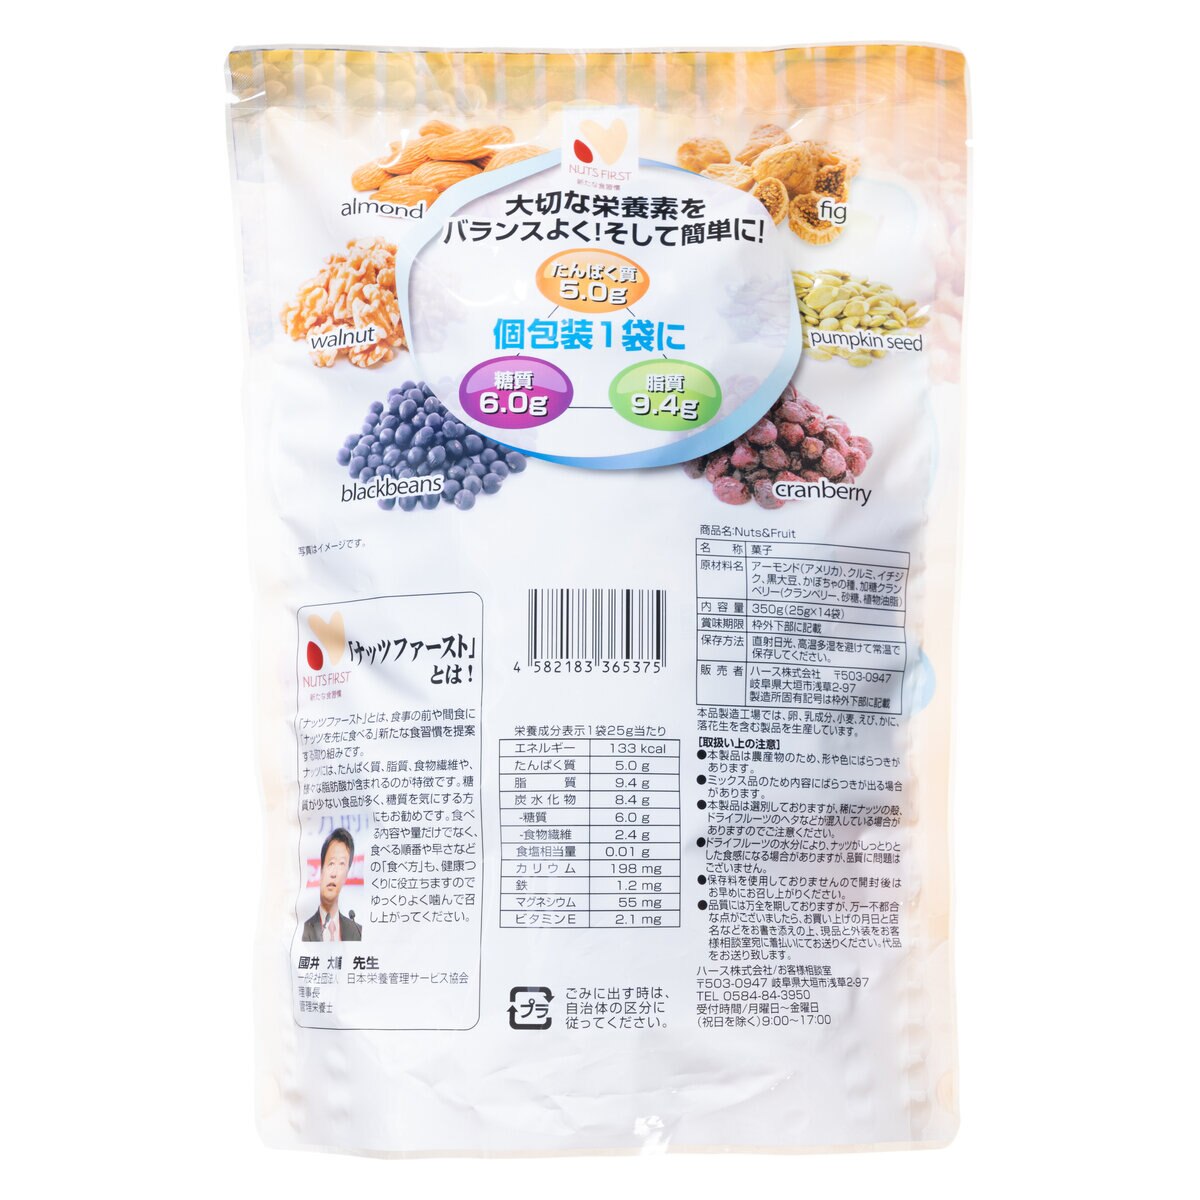 糖質管理ナッツフルーツ 350g | Costco Japan